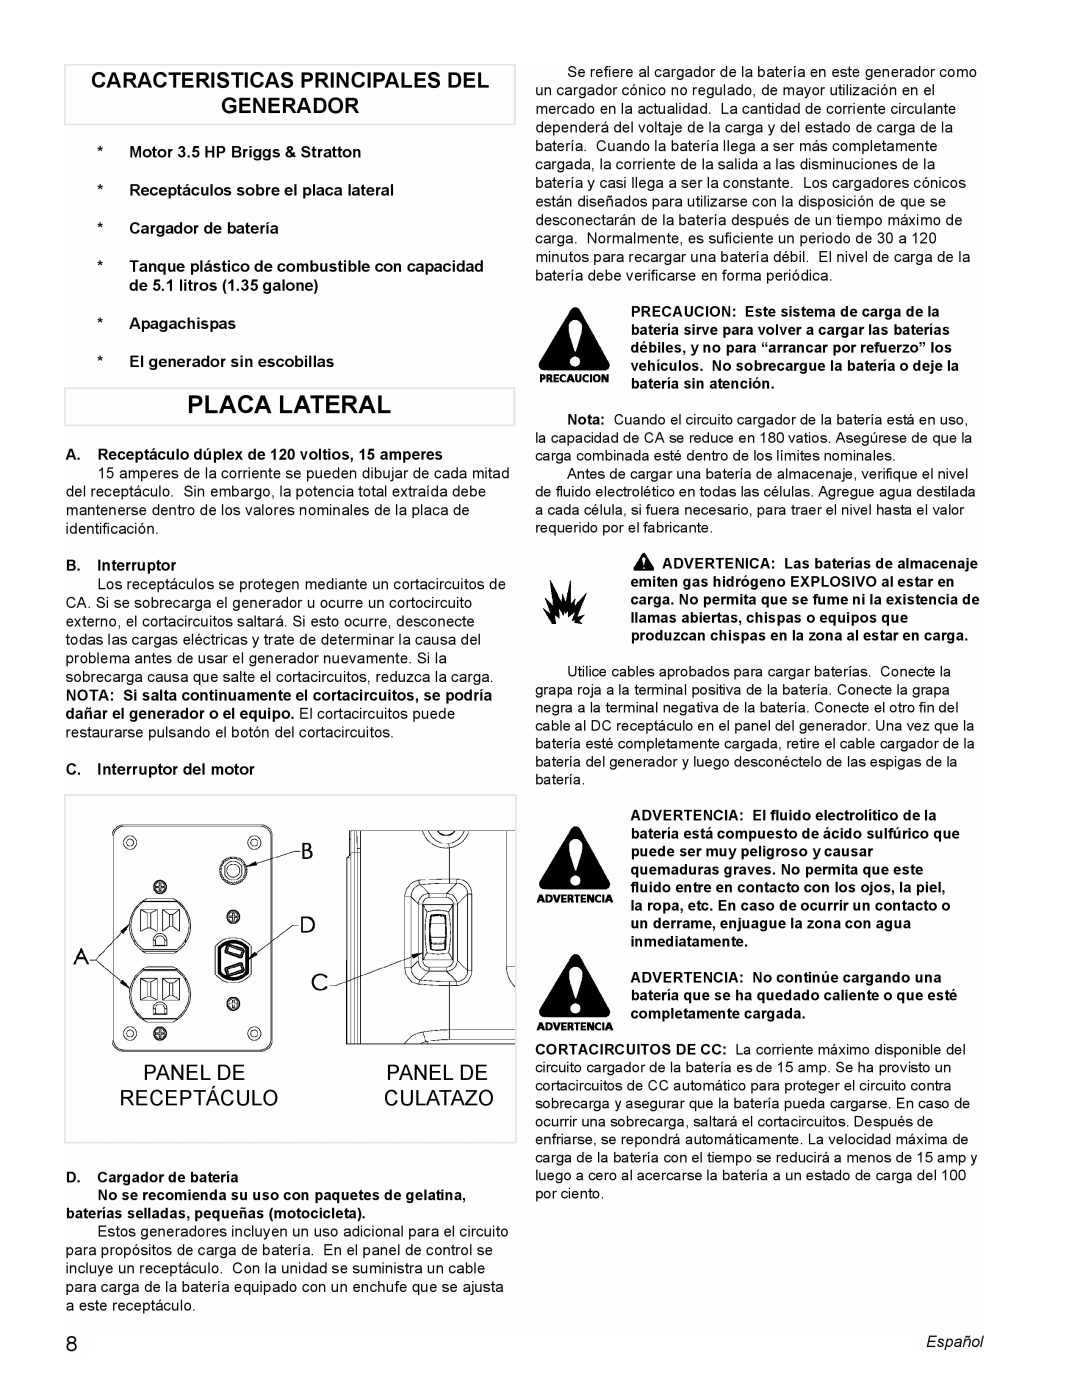 Powermate PMC401856 manual Placa Lateral, Caracteristicas Principales Del Generador, Panel De, Receptáculo, Culatazo 